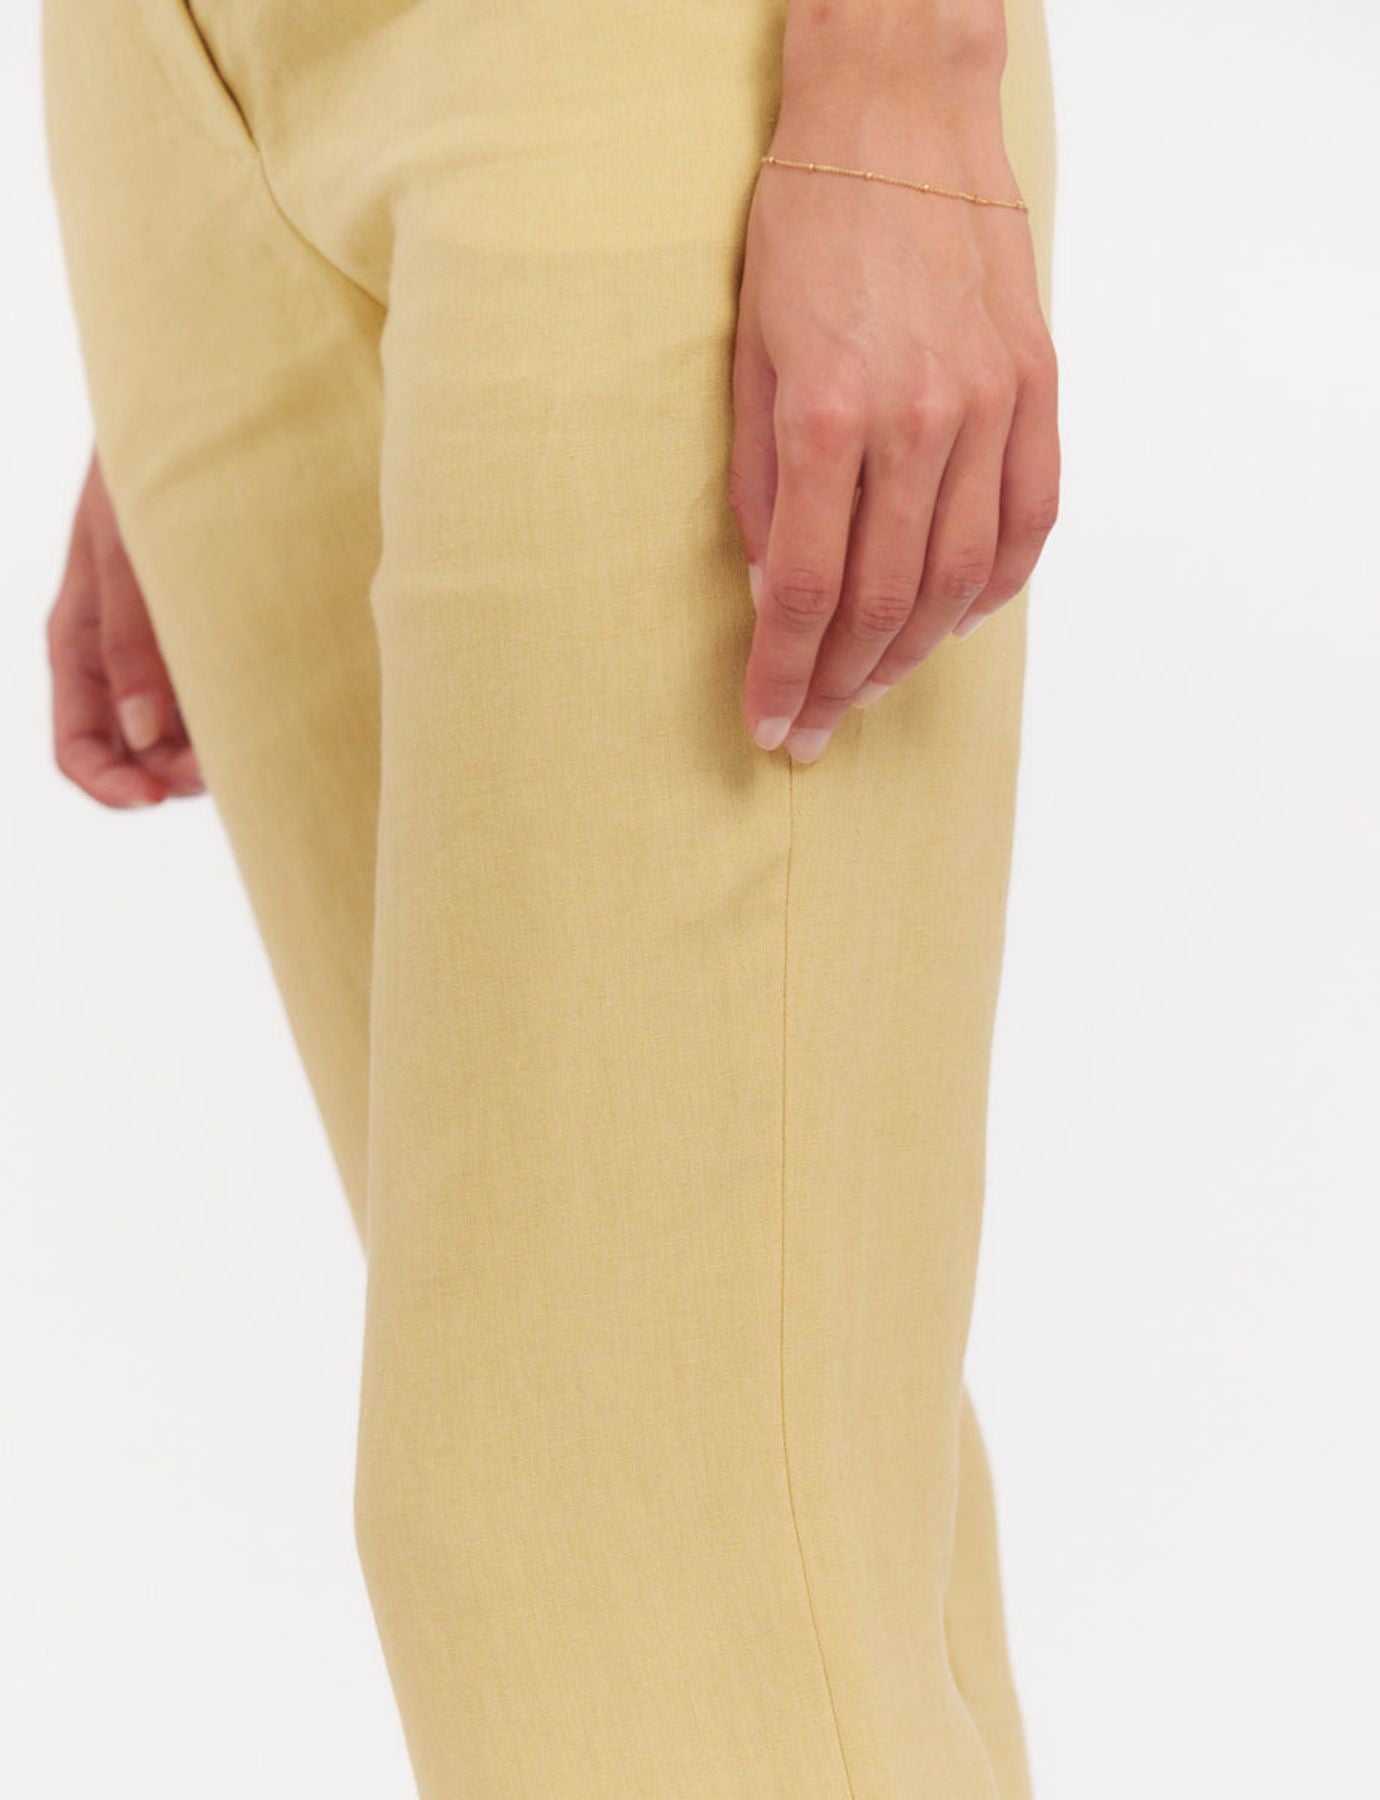 trousers-francisco-in-linen-lemon